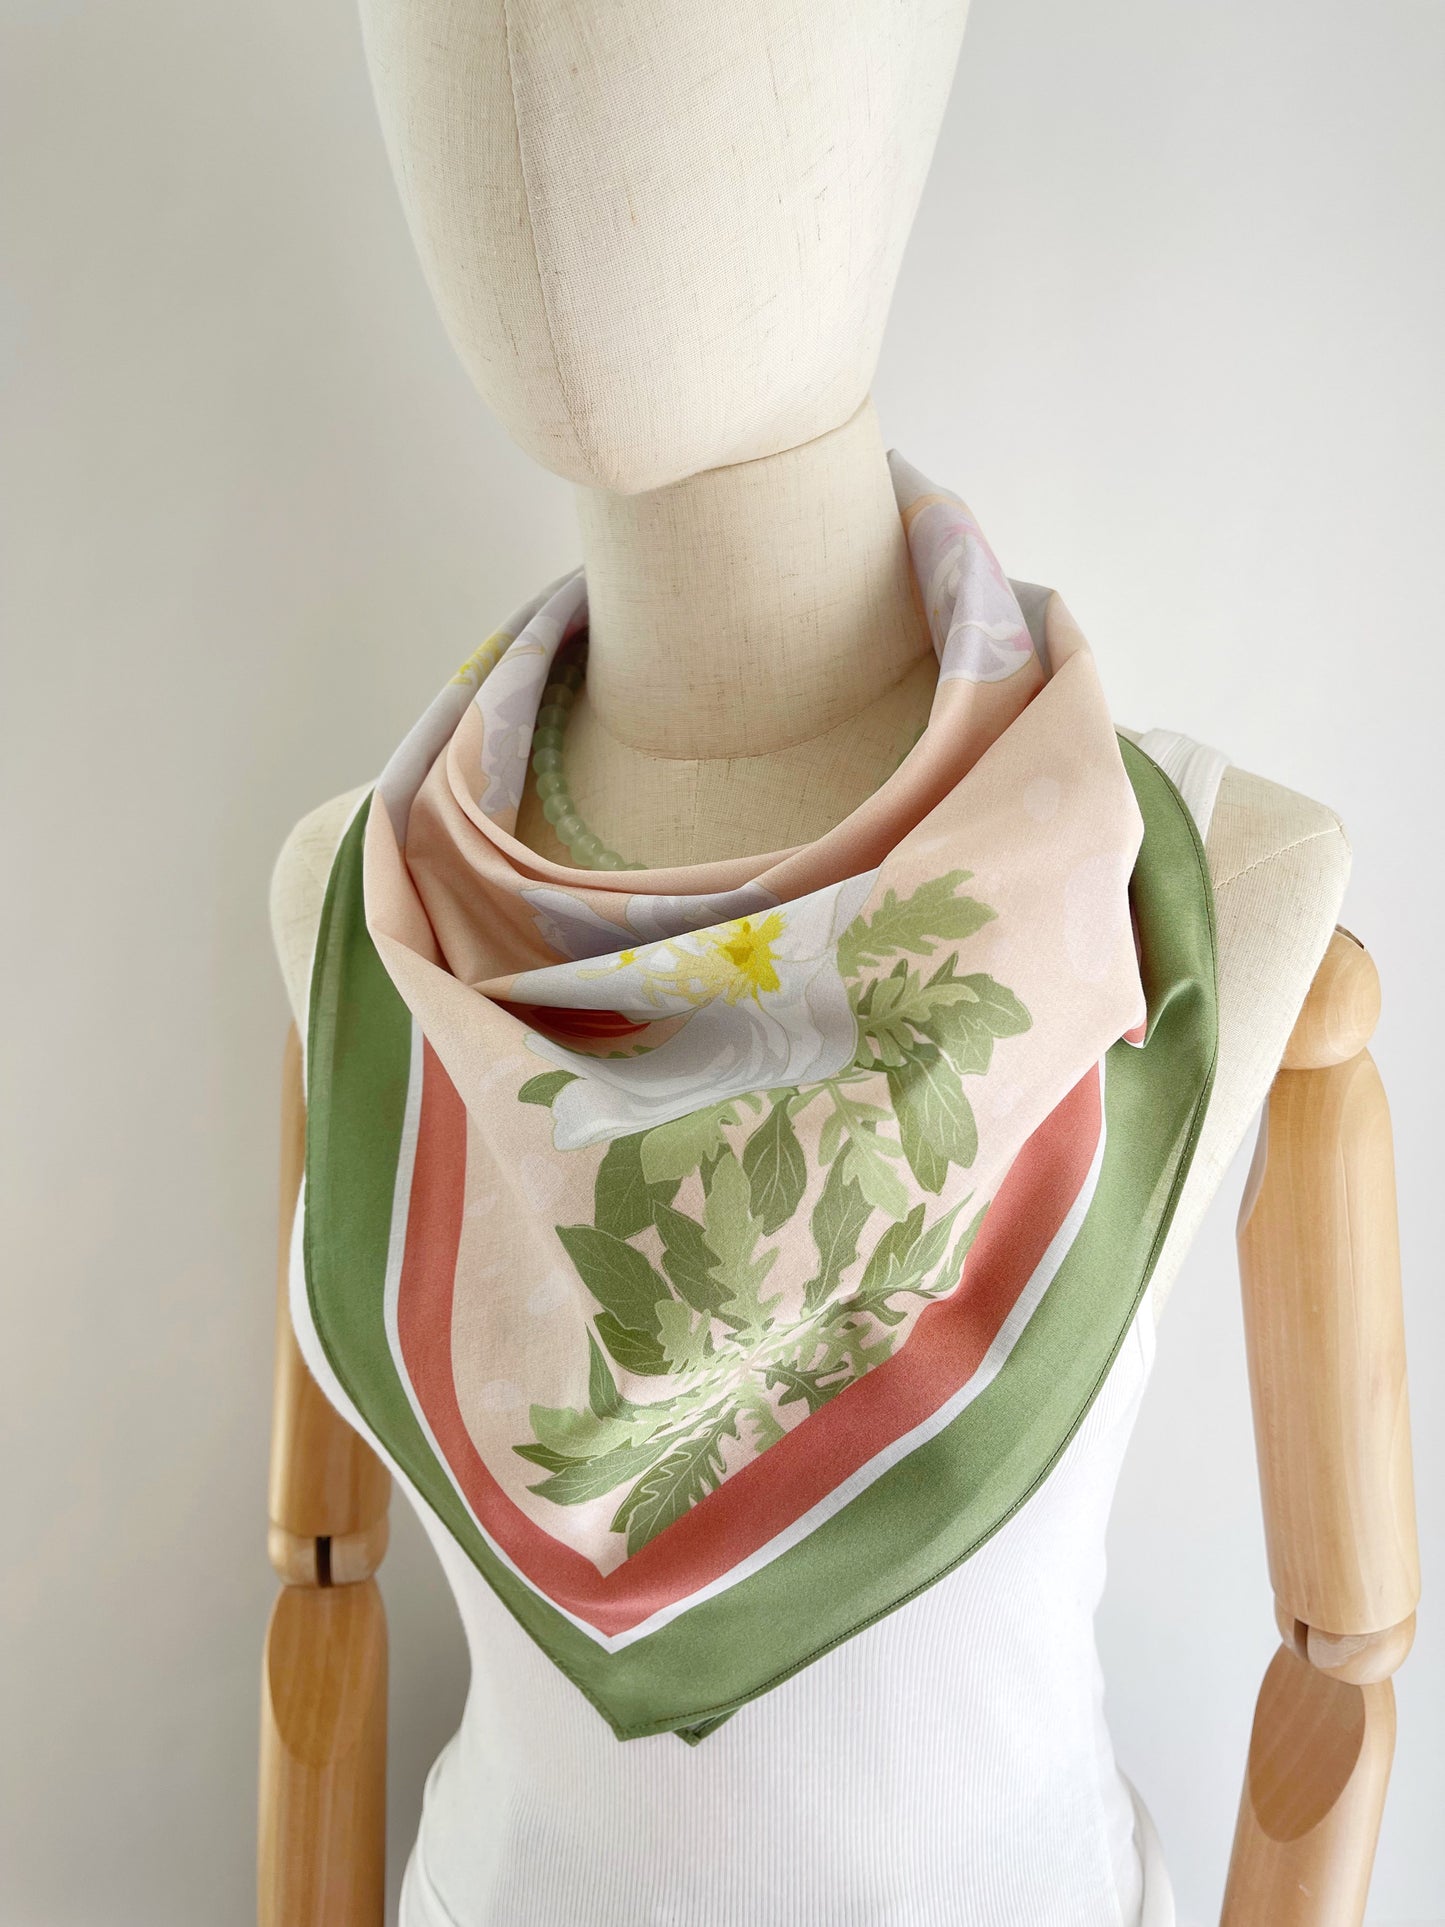 A. Desert Primrose Pima Cotton Lawn 26” square scarf